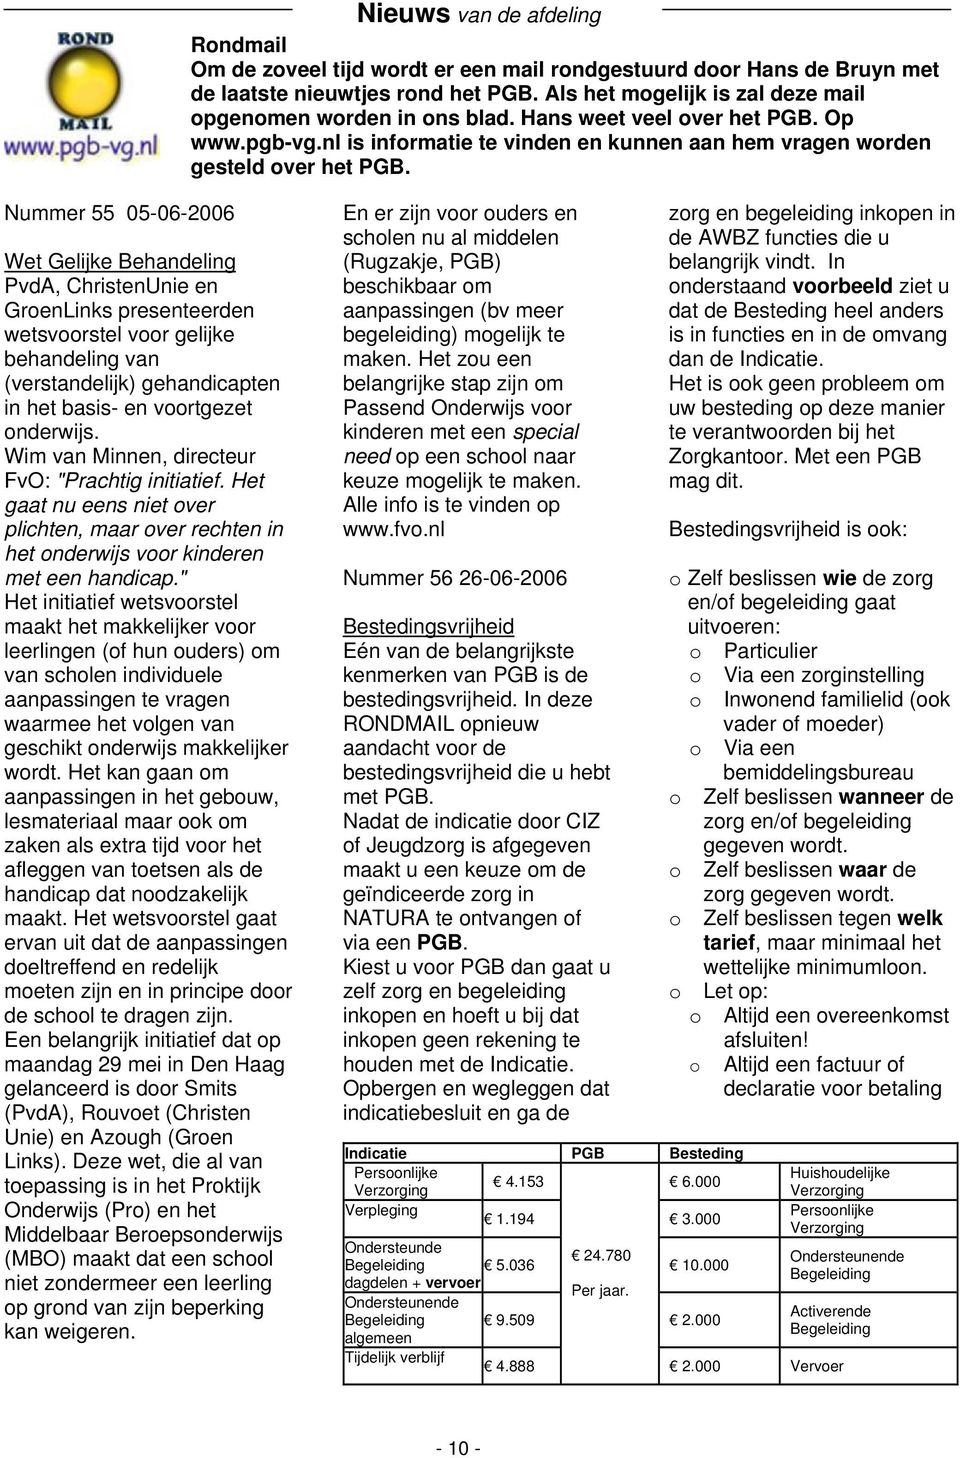 Nummer 55 05-06-2006 Wet Gelijke Behandeling PvdA, ChristenUnie en GroenLinks presenteerden wetsvoorstel voor gelijke behandeling van (verstandelijk) gehandicapten in het basis- en voortgezet